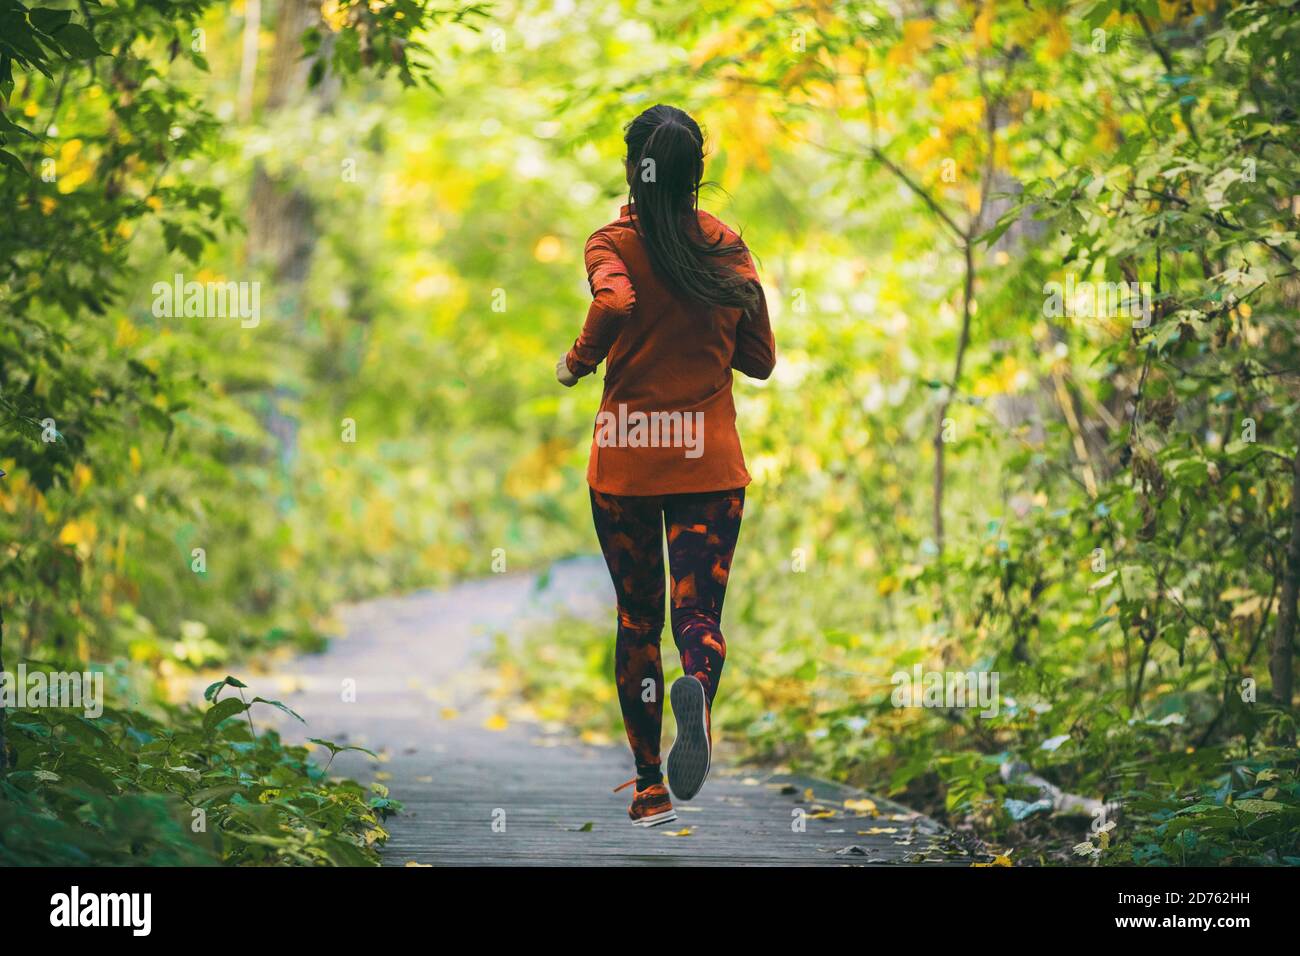 Run fit runner donna jogging in verde primavera foresta parco, sano stile  di vita attivo esercizio cardio in natura all'aperto. Ragazza che corre da  Foto stock - Alamy